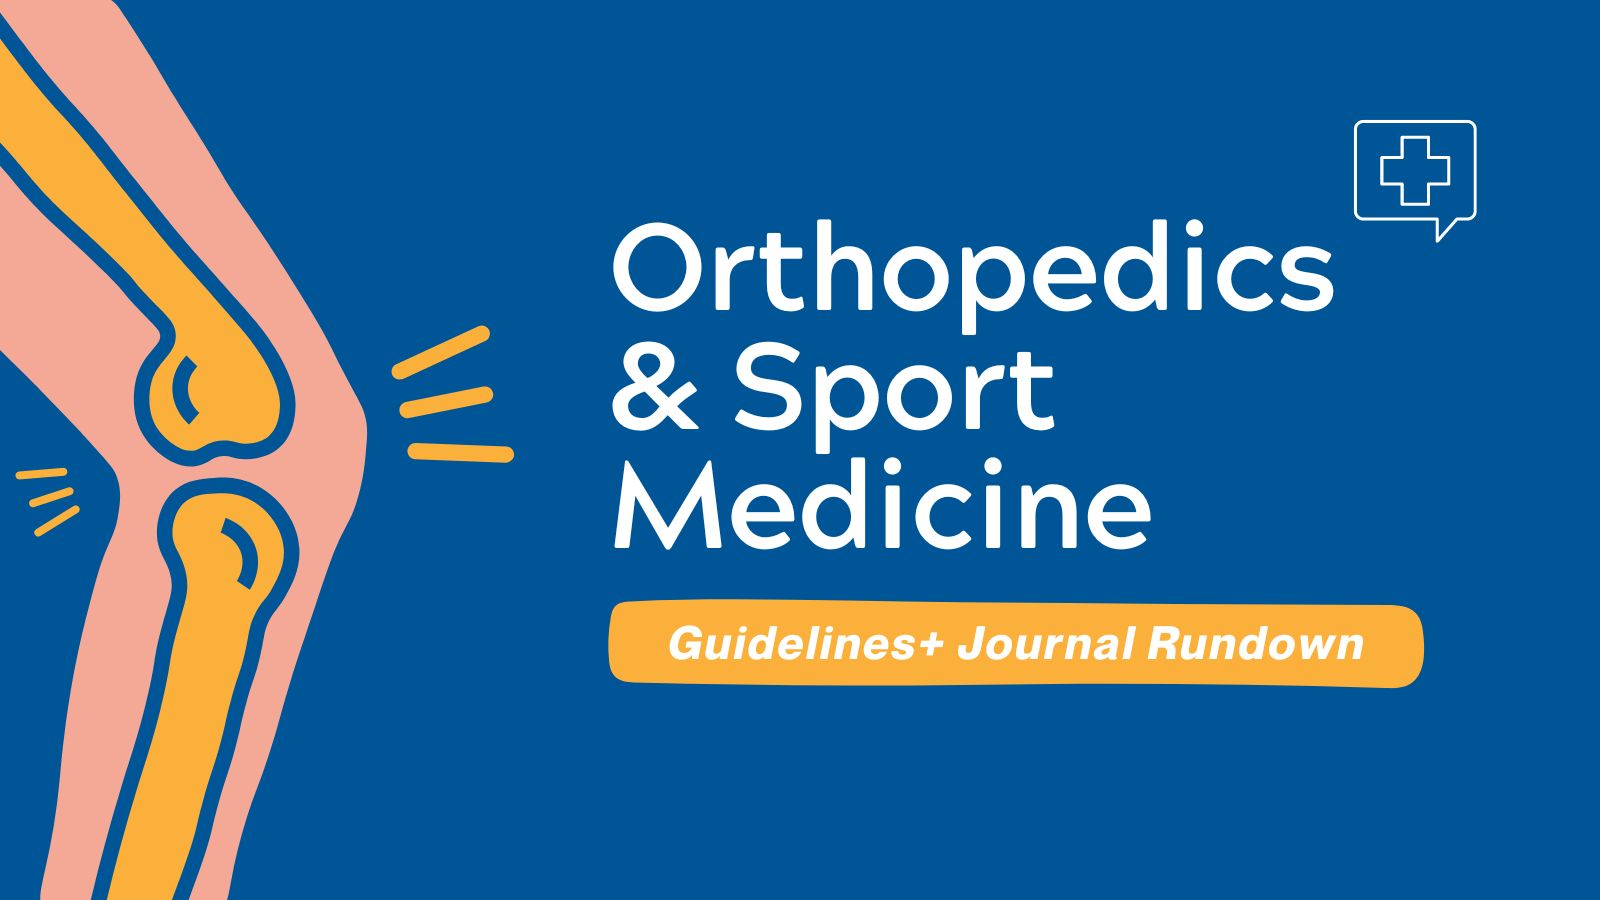 Guidelines+ Journal Rundown Orthopedics